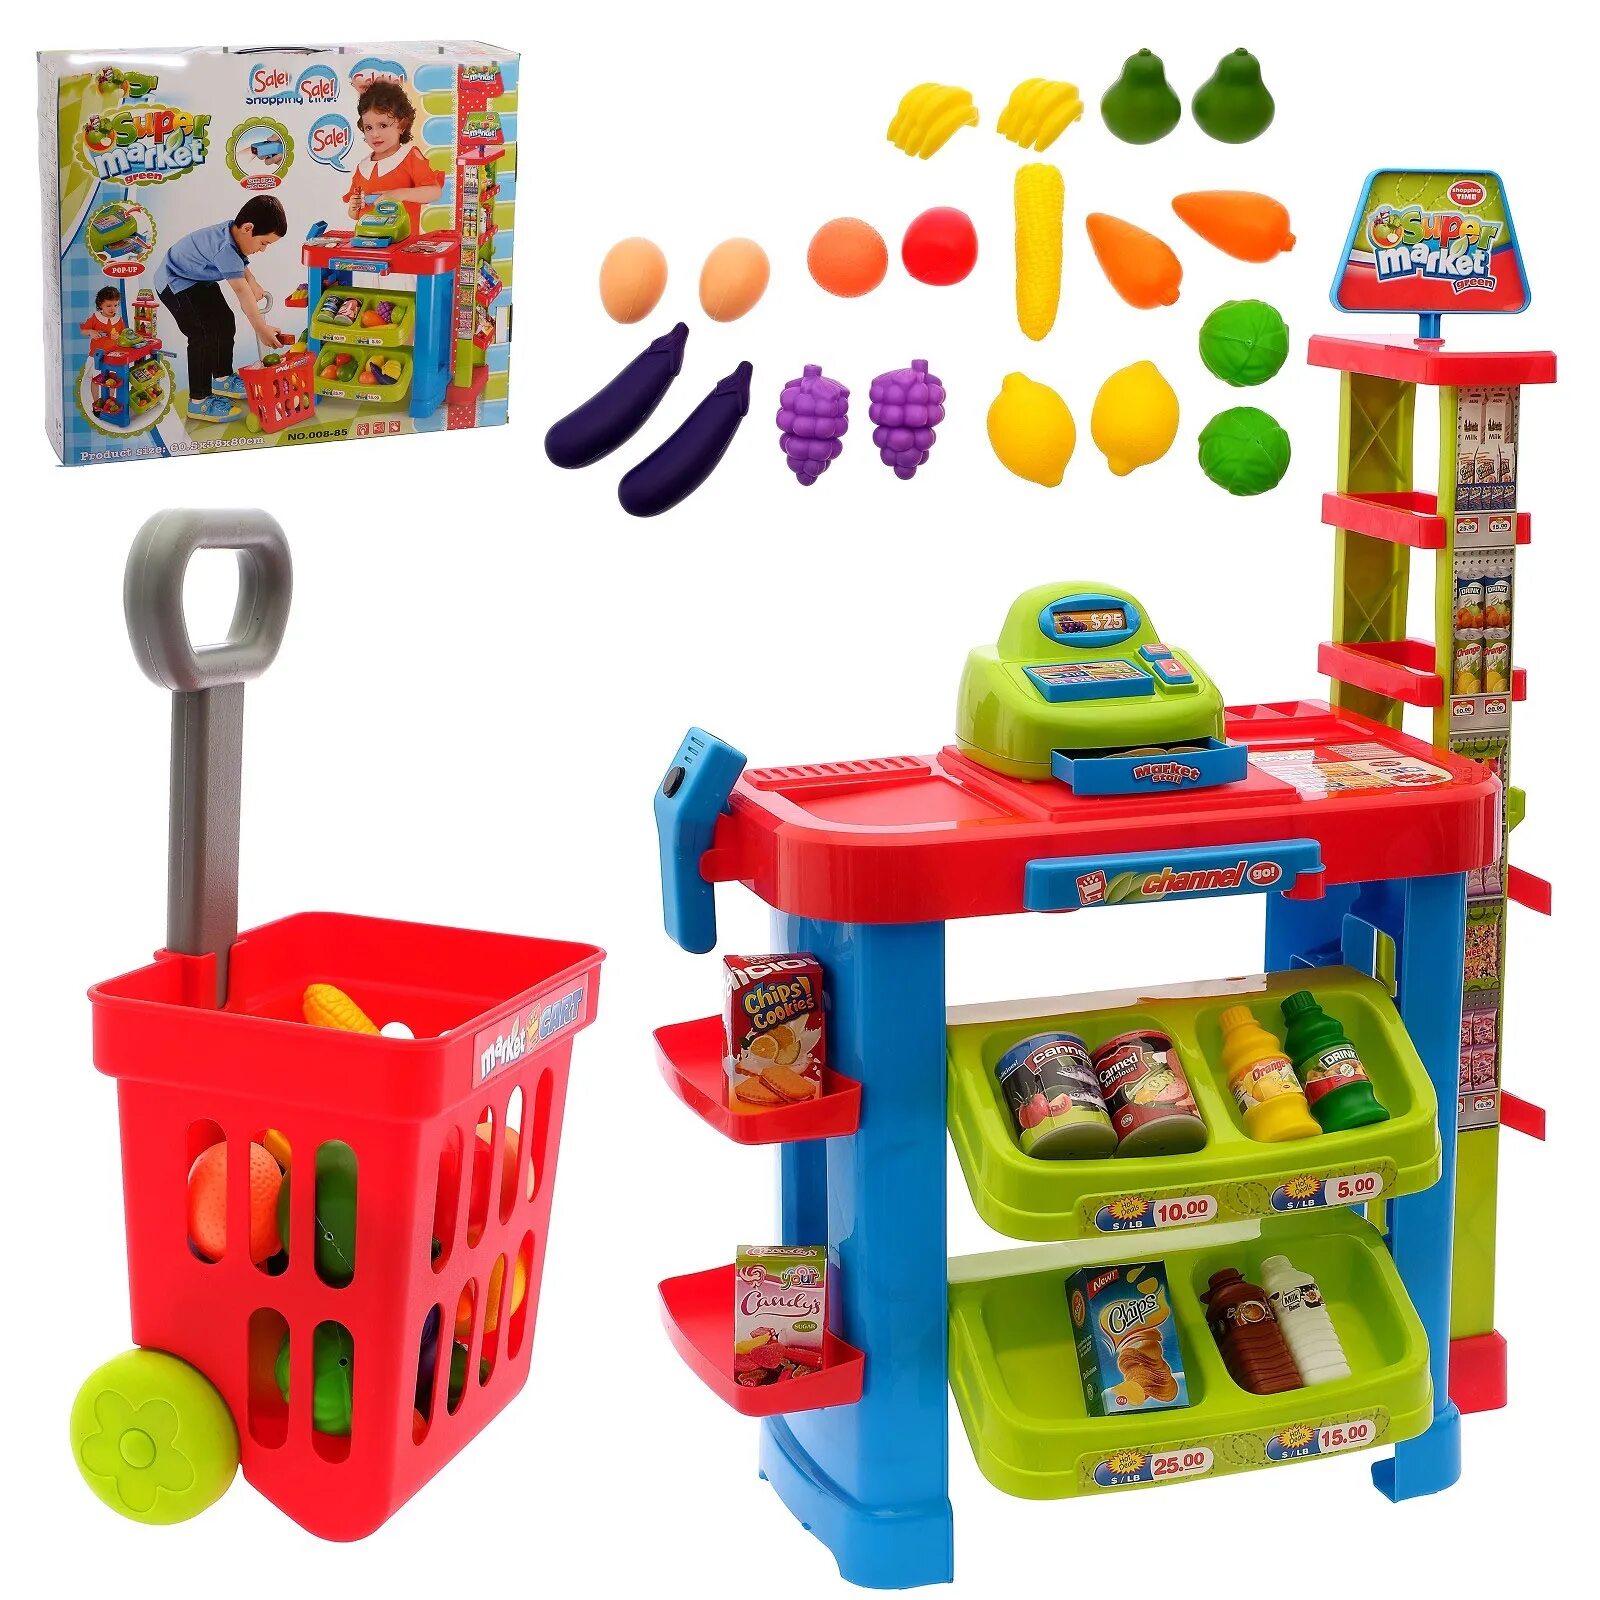 Игрушки для детского сада. Игровой набор магазин. Набор игрушек для детей. Игровые наборы для детей. Маркет для игр для детей